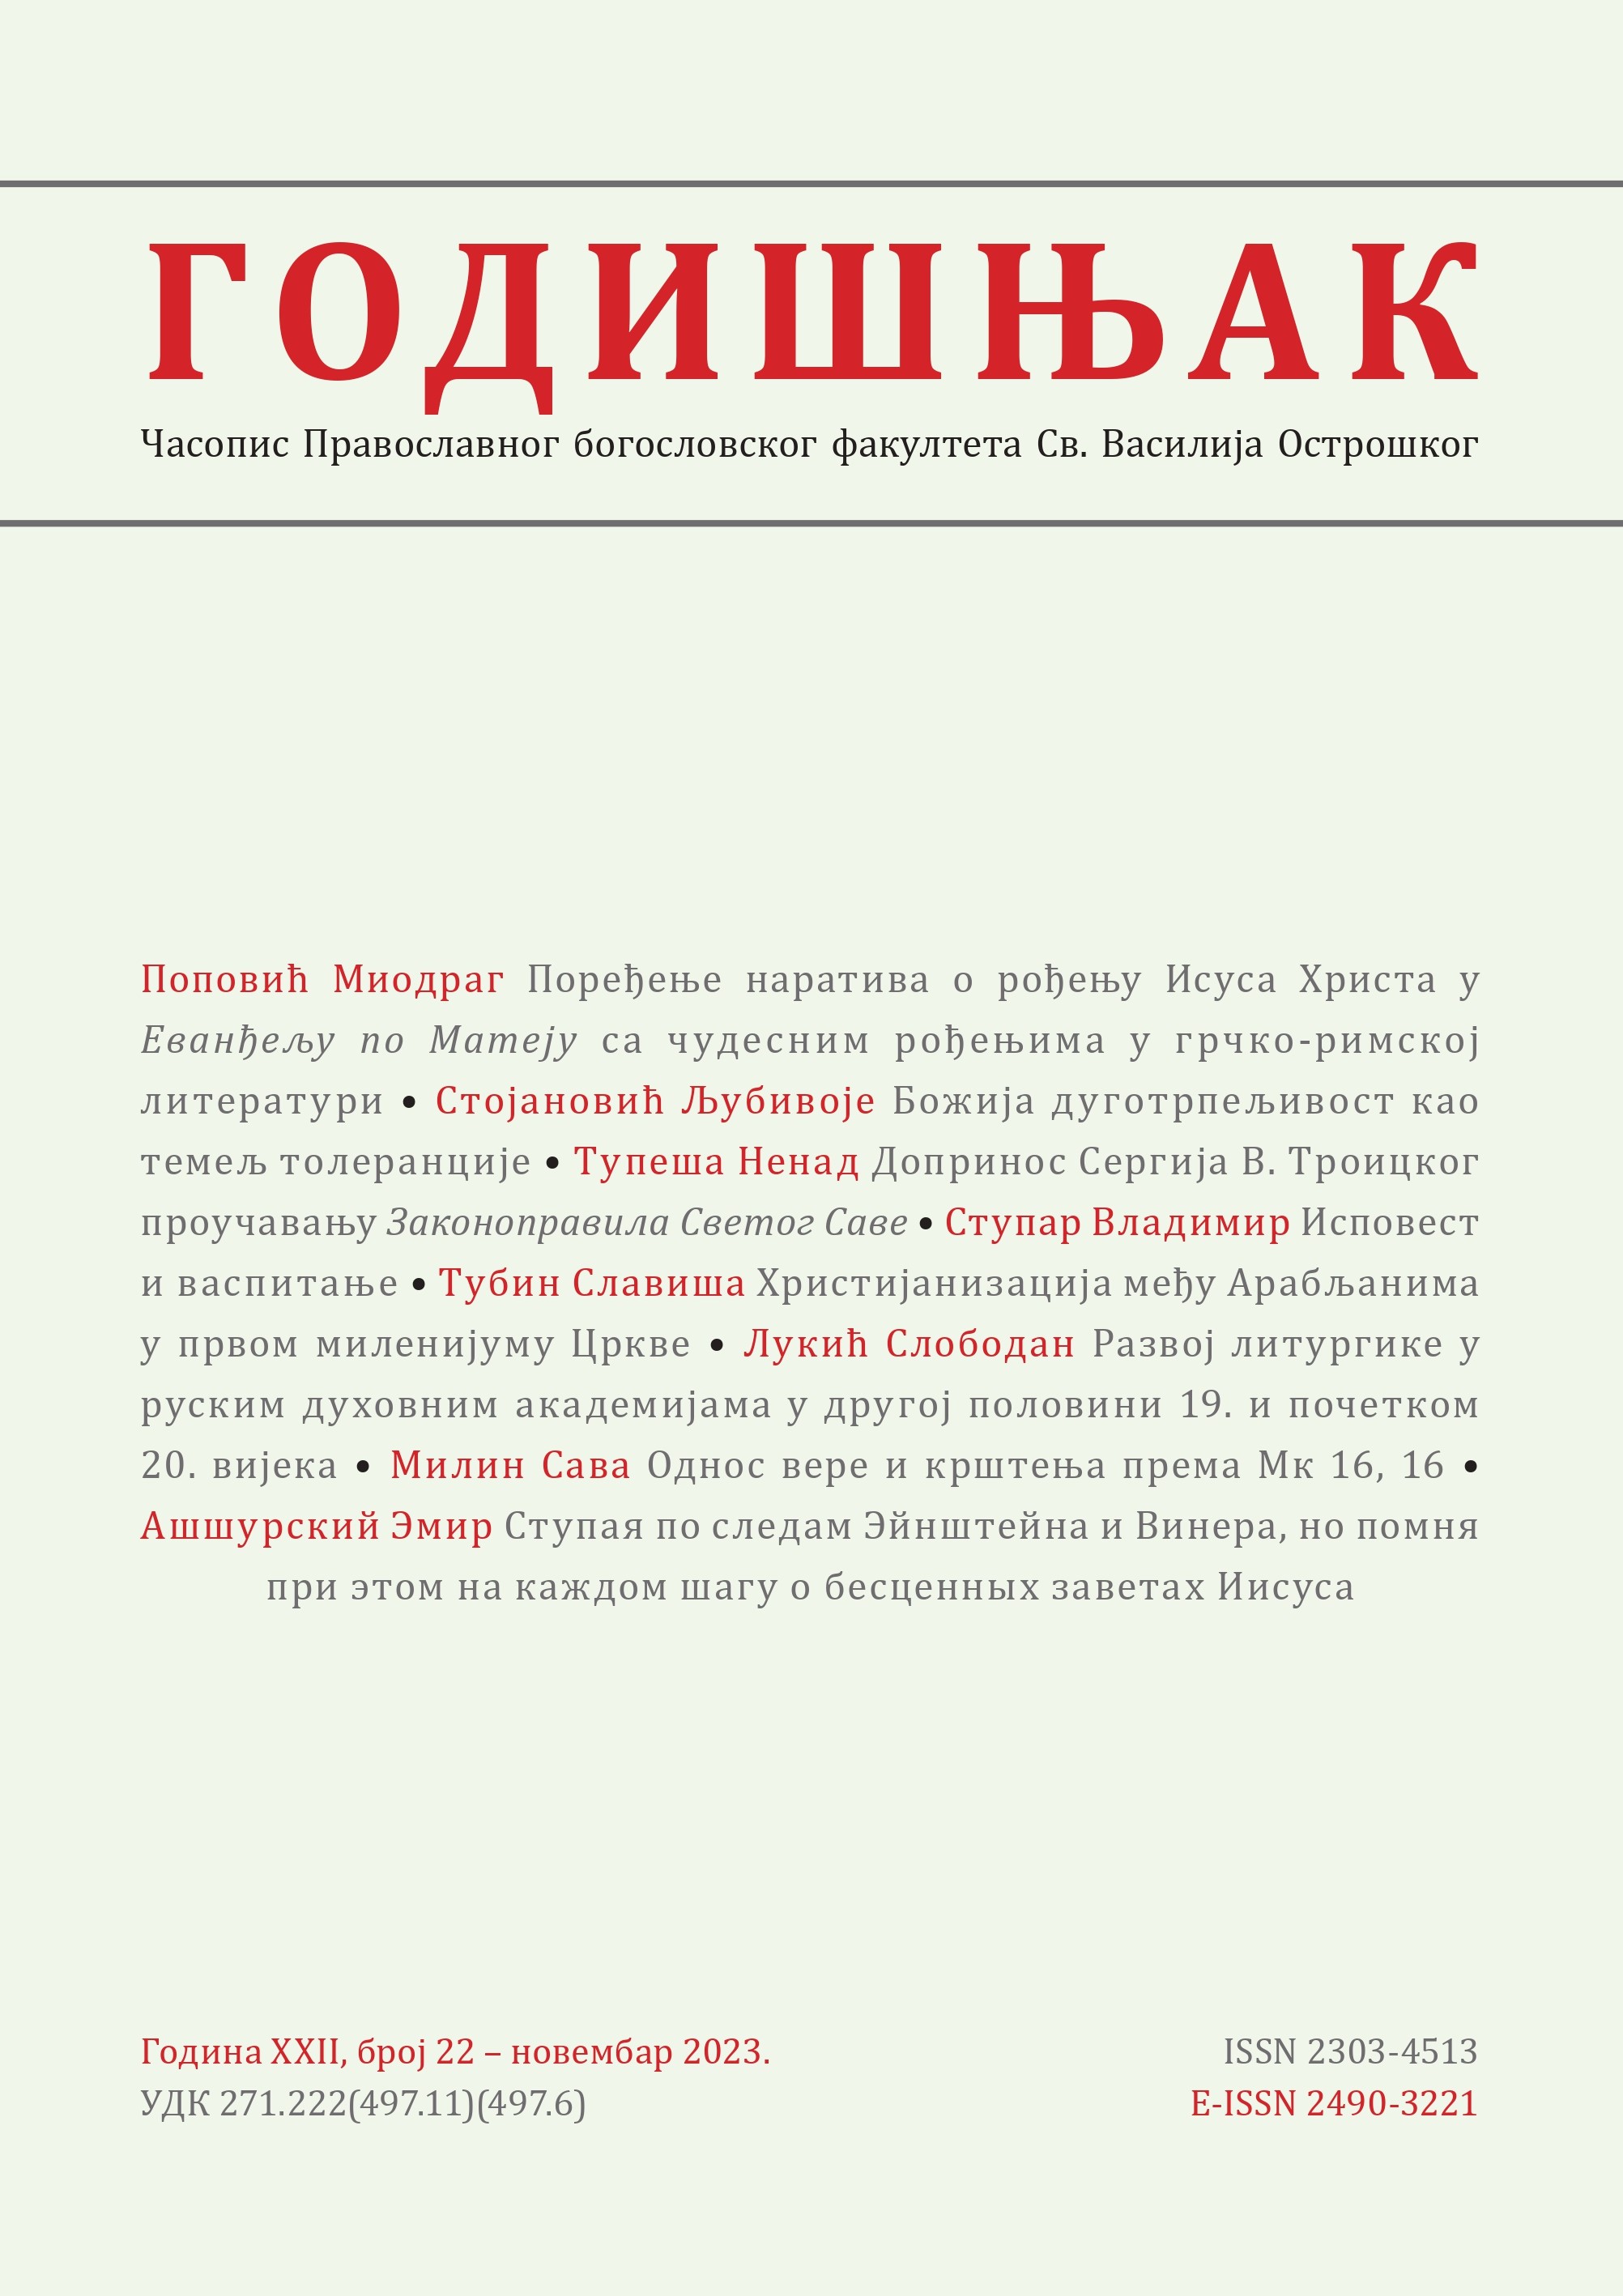 Sergey V. Troitsky’s Contribution to the Study of Saint Sava’s Zakonopravilo Cover Image